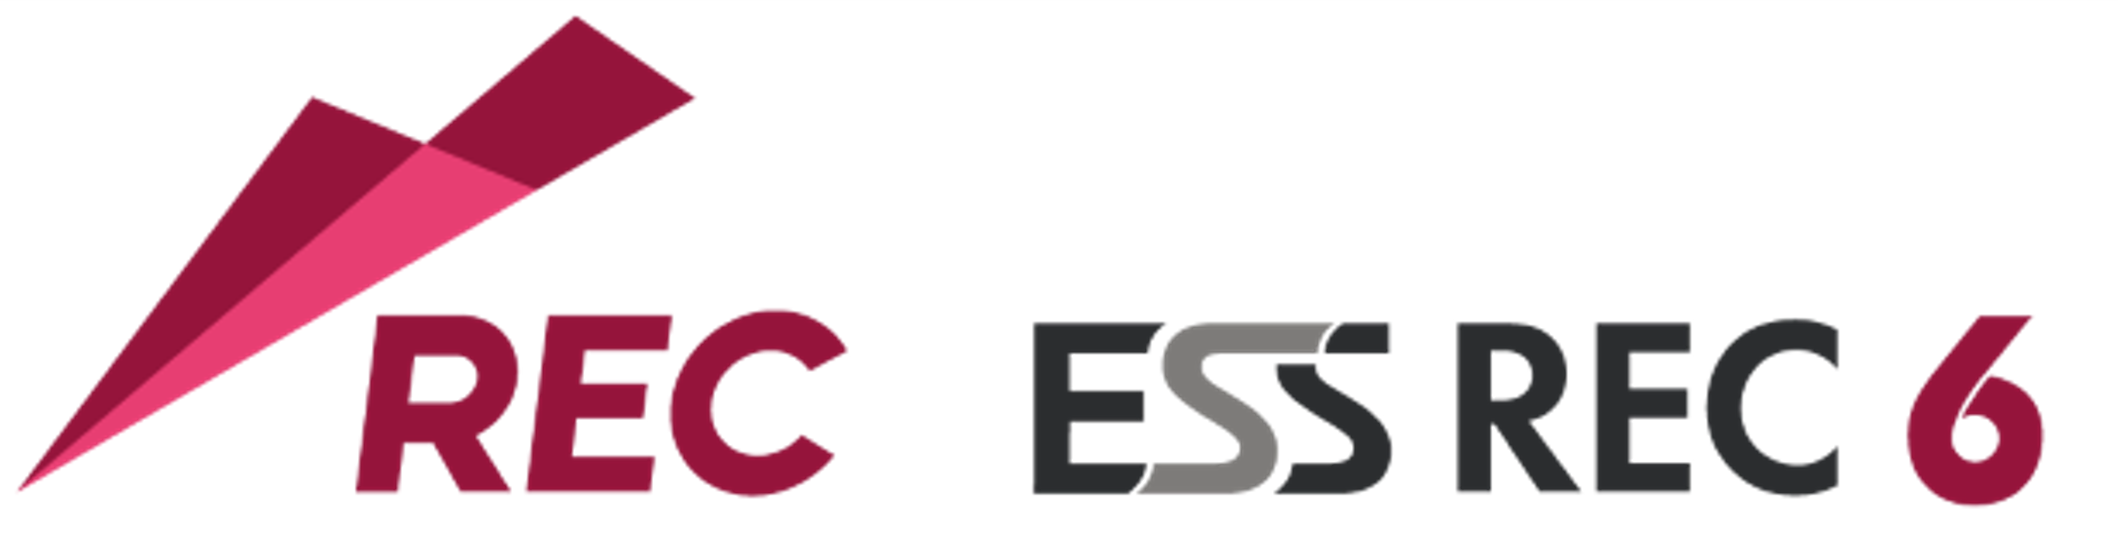 エンカレッジ・テクノロジ、14年連続市場シェアNo.1の
システム証跡監査ツール「ESS REC 6」の
最新バージョン V6.1を5月中旬より販売開始